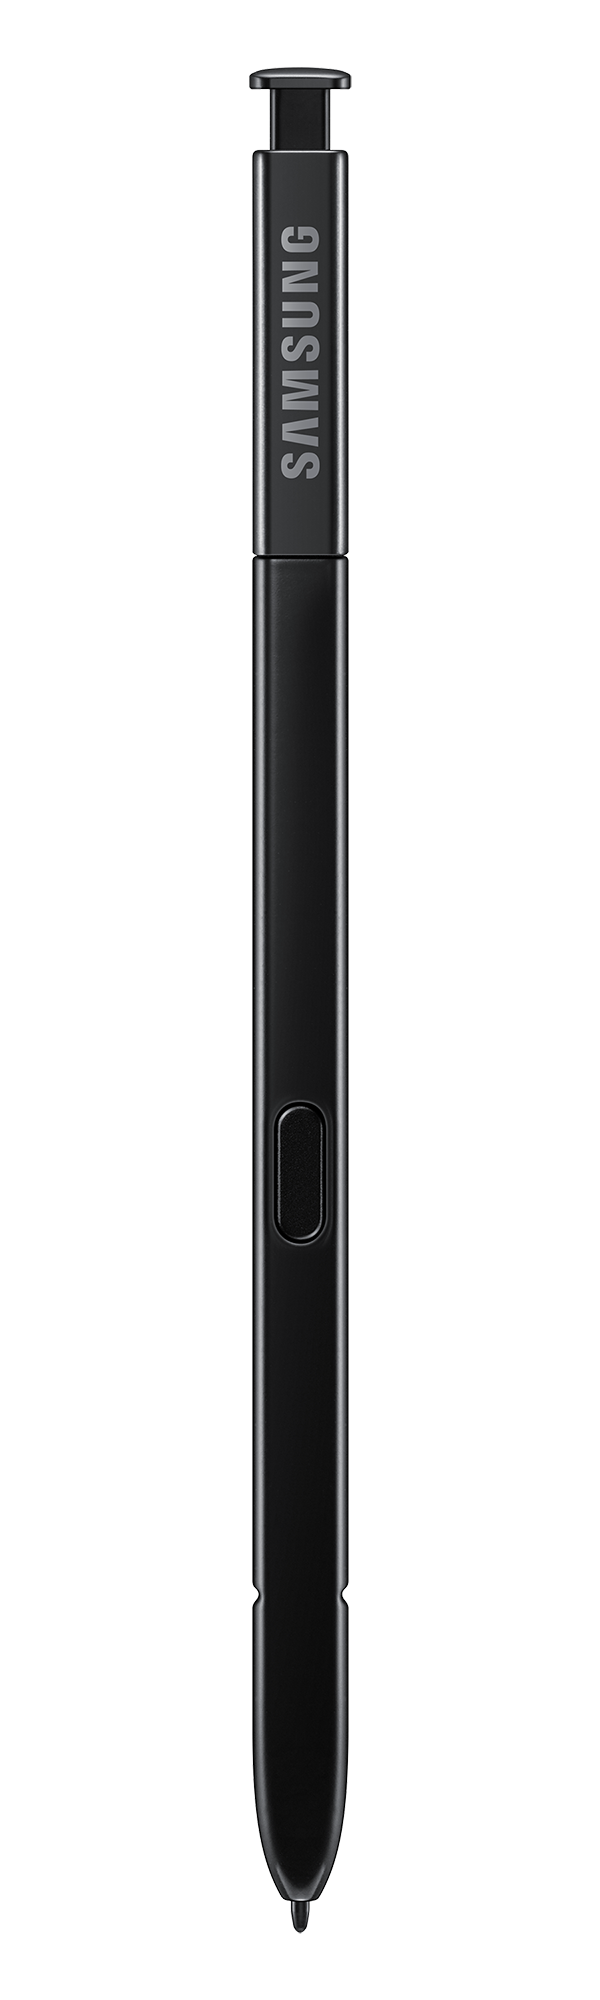 Samsung Galaxy Note9 S Pen black